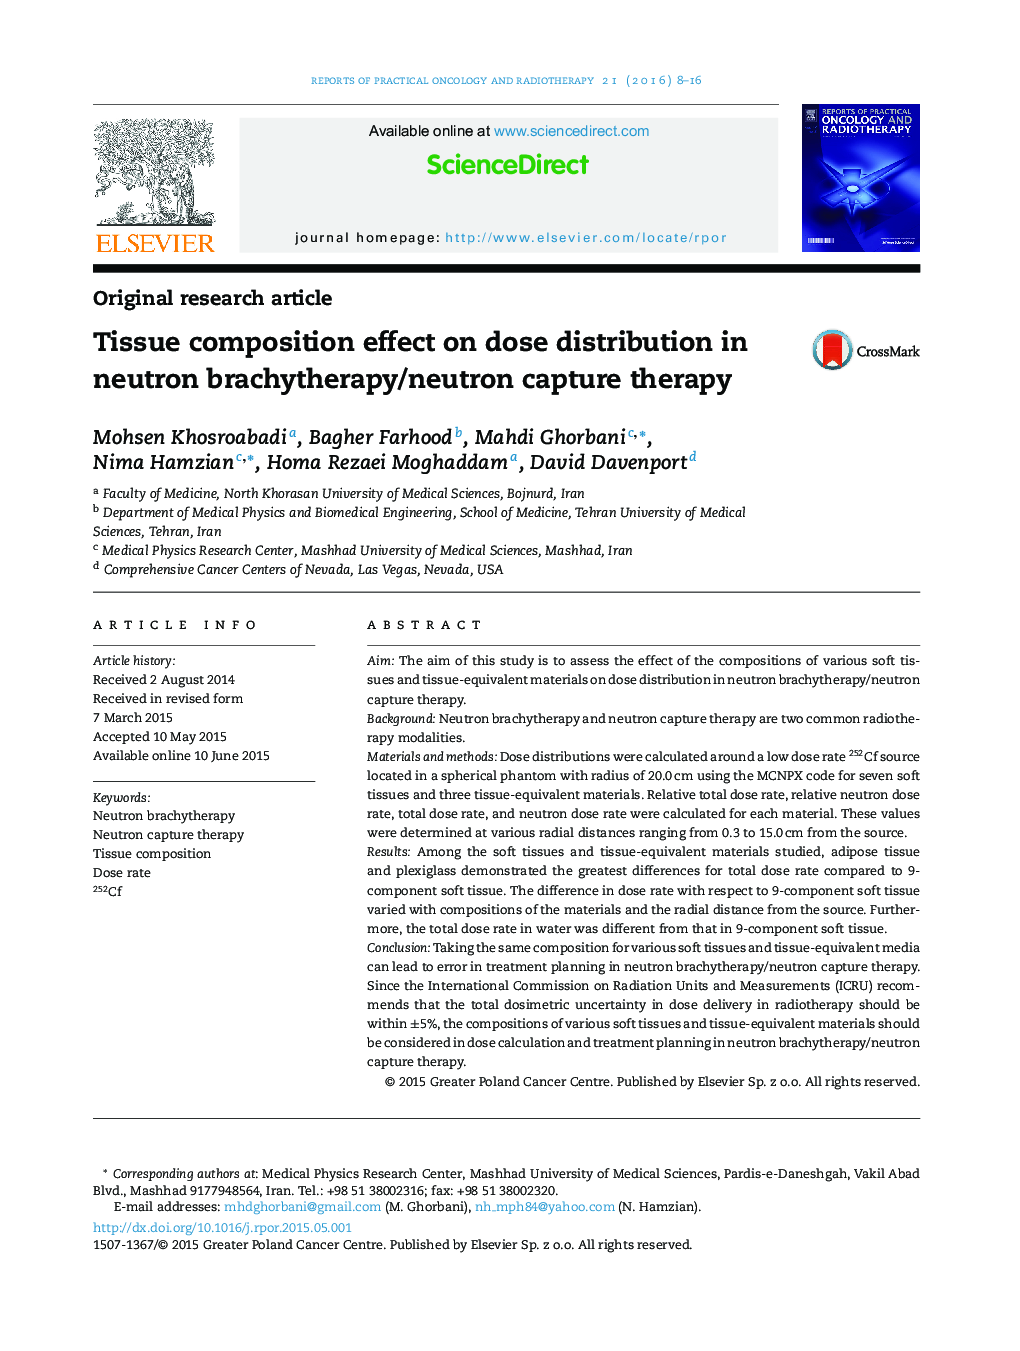 تأثیر ترکیبات بافتی بر توزیع دوز در درمان جذب براکی تراپی/نوترون نوترونی